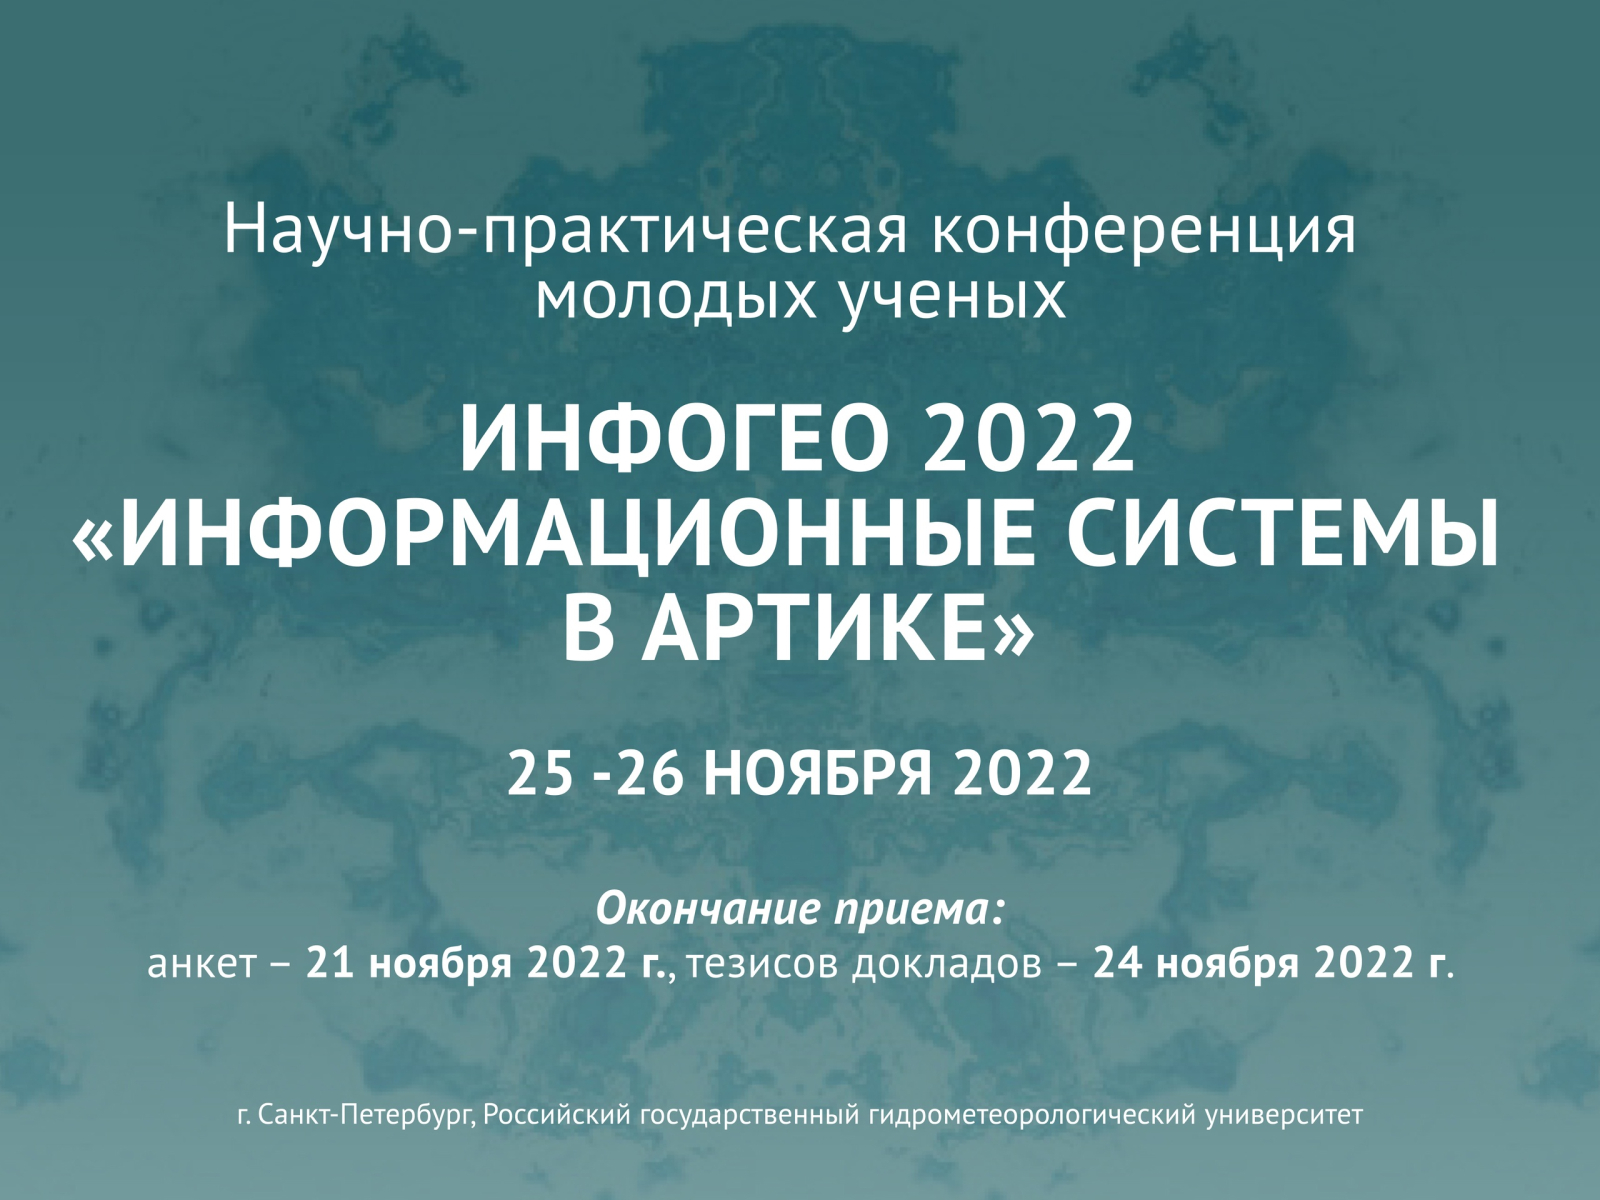 Всероссийская конференция ИНФОГЕО 2022 «Информационные системы в Арктике»